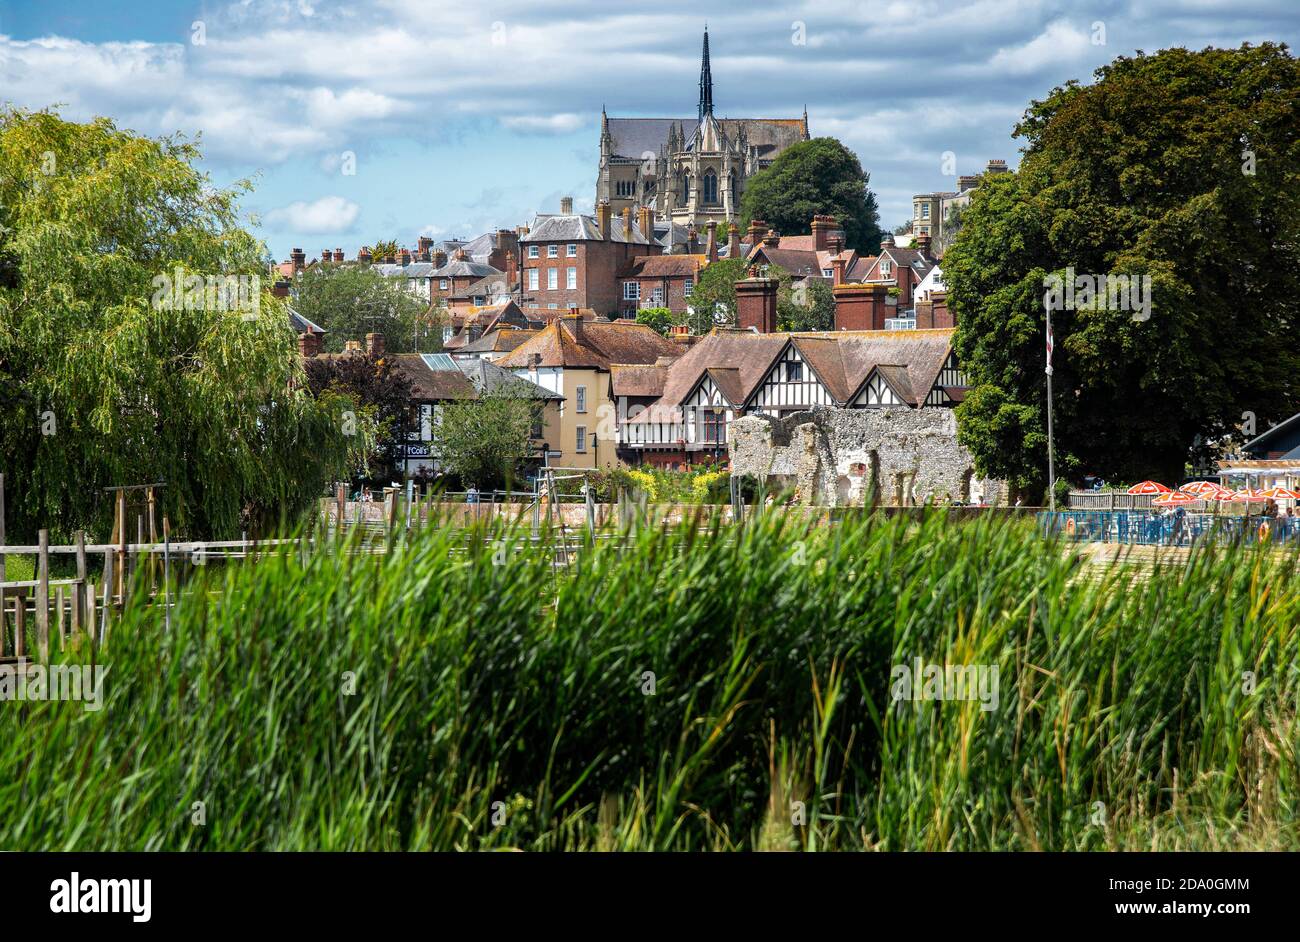 La ville historique du marché d'Arundel, prise de la rive de la rivière Arun montrant la ville et la cathédrale gothique d'Arundel au sommet d'une colline - West Sussex, Angleterre, Royaume-Uni Banque D'Images